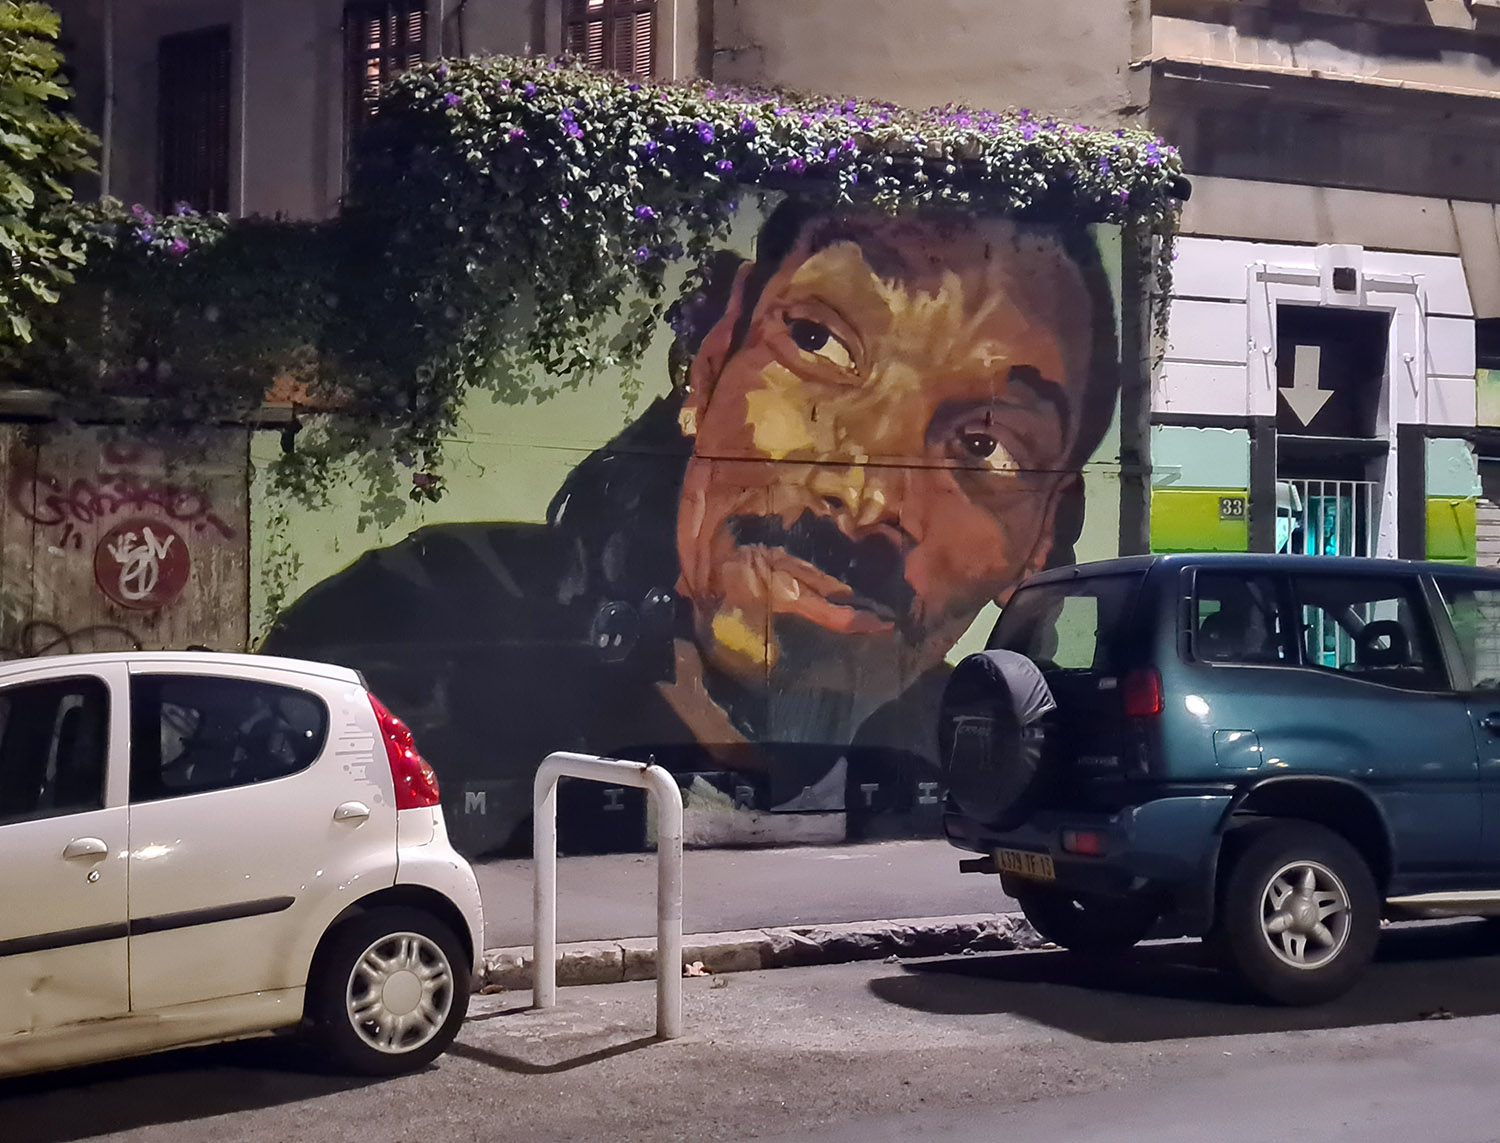 Le Snoop Dogg de la rue Levat par OCM Vibration, 2019